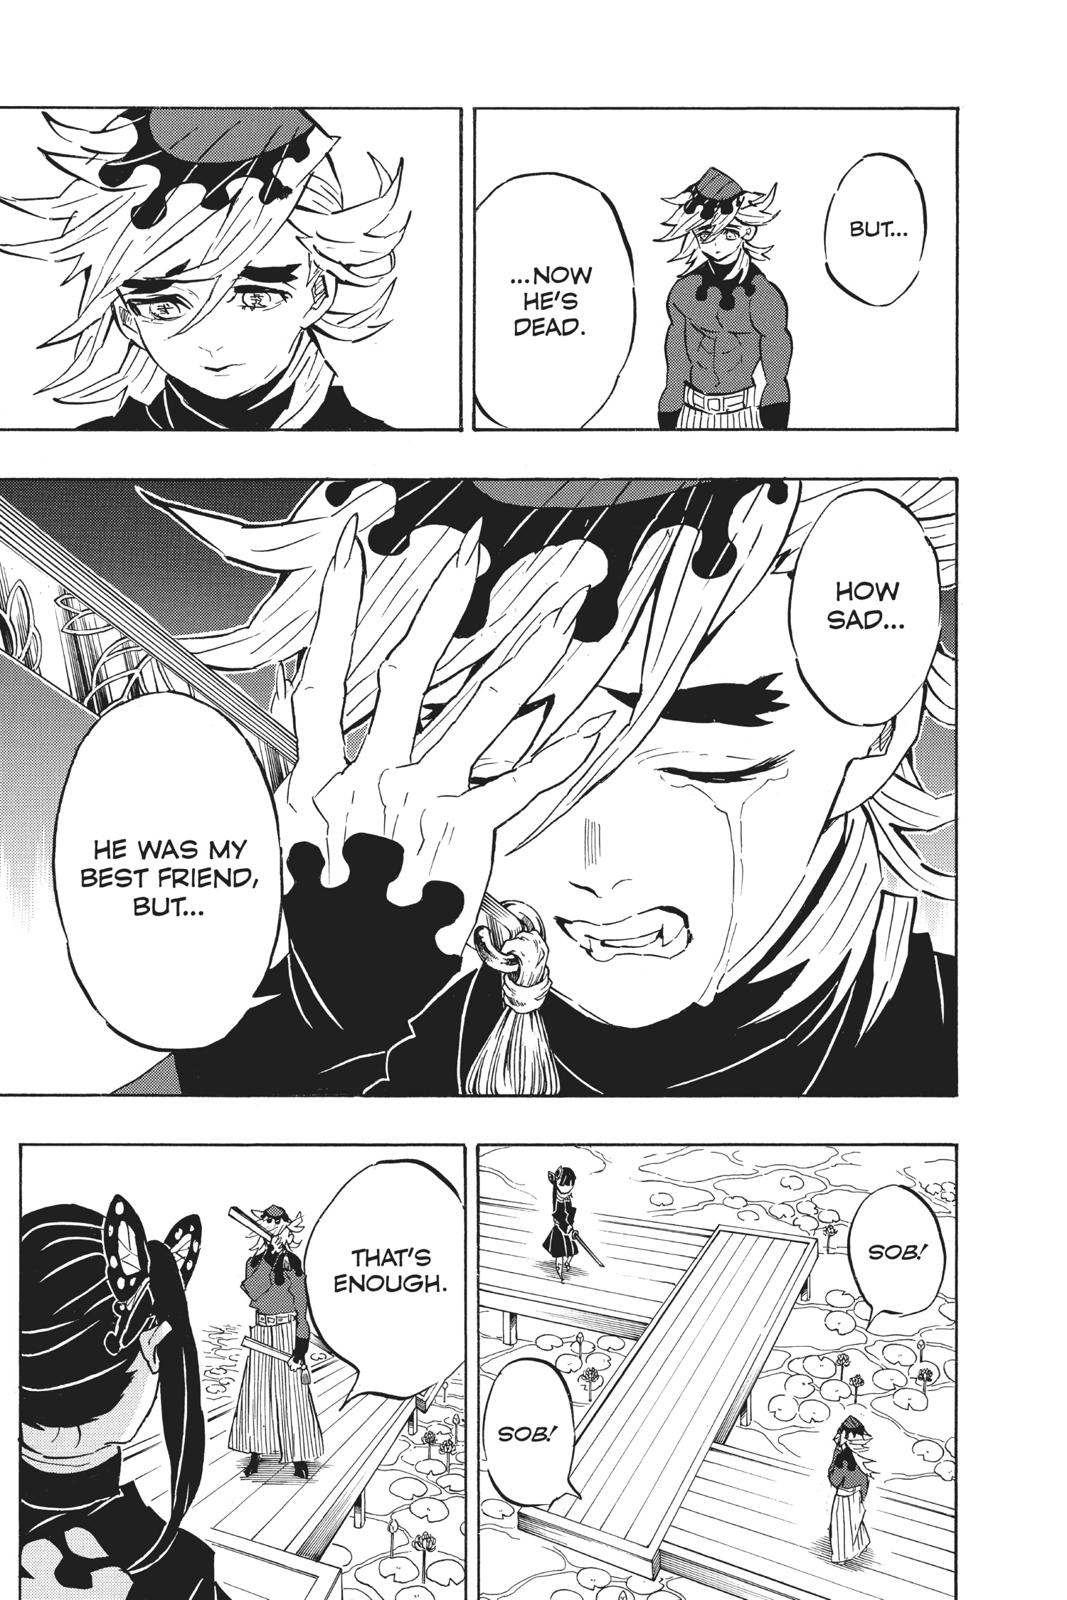 Demon Slayer Manga Manga Chapter - 157 - image 8